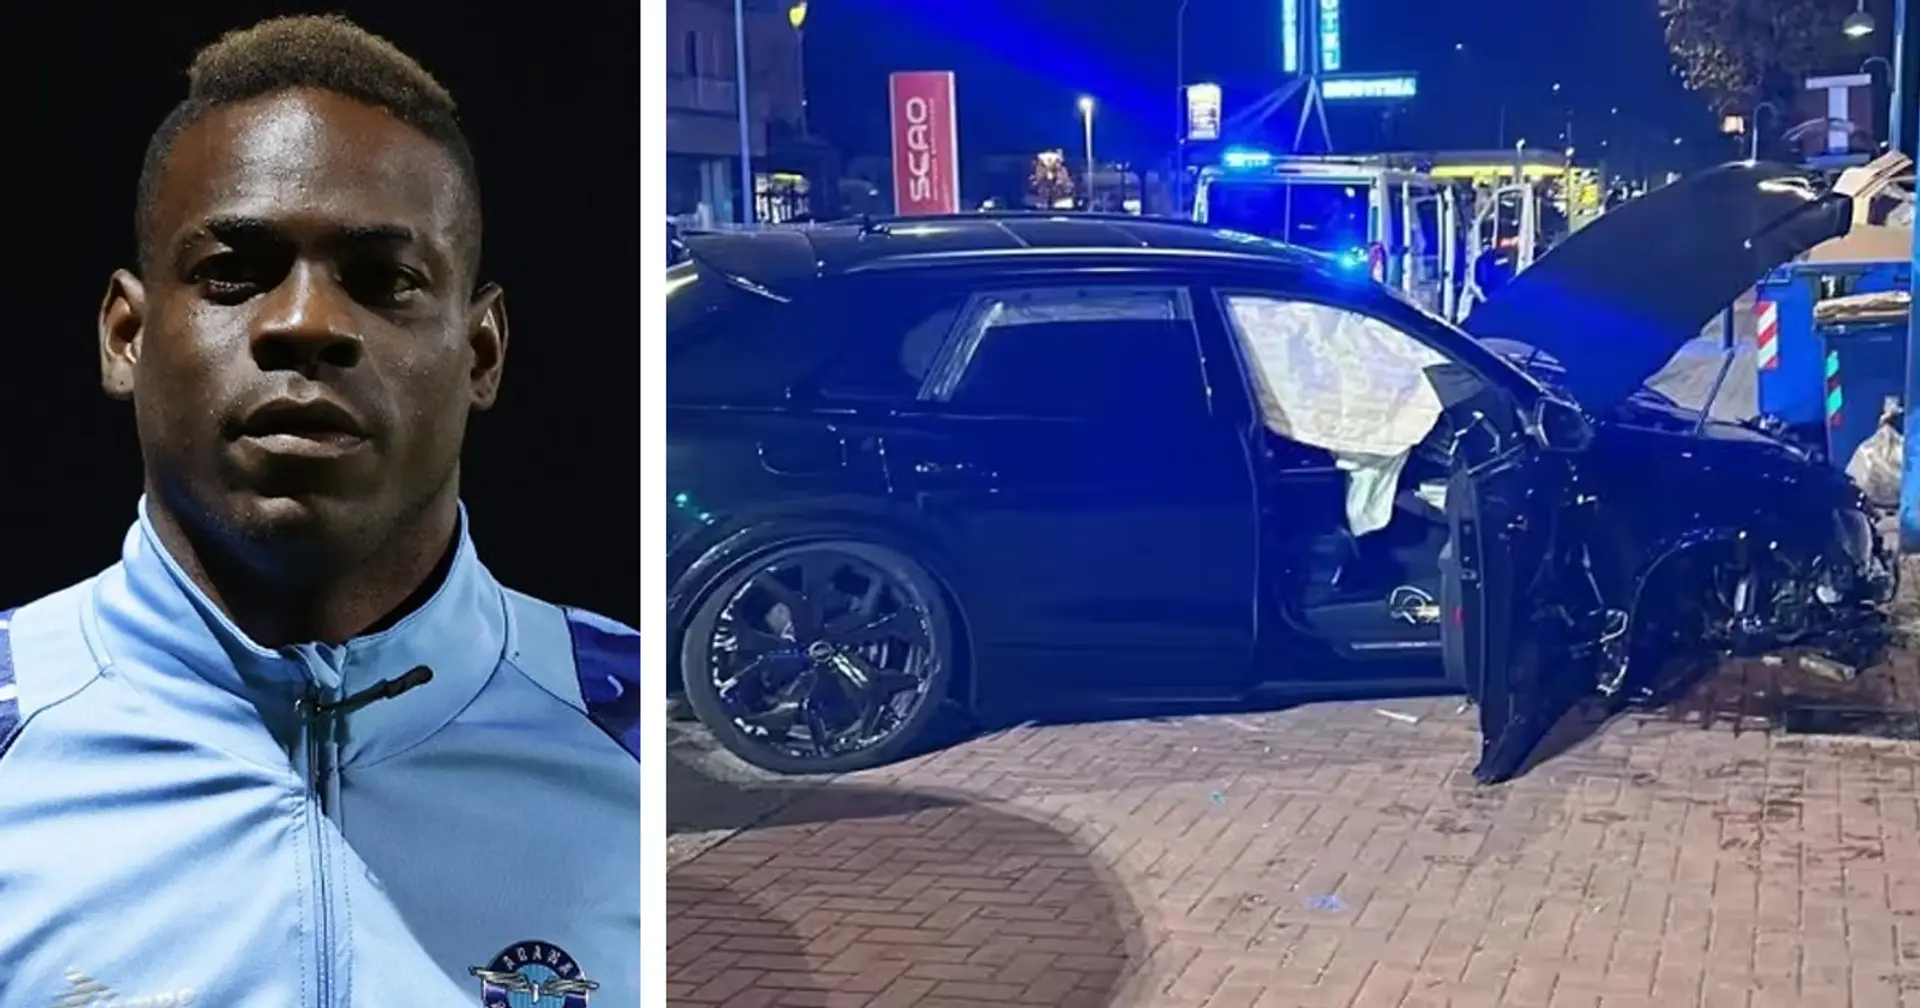 Accident de voiture pour Mario Balotelli : voiture détruite, le joueur a refusé l'alcootest